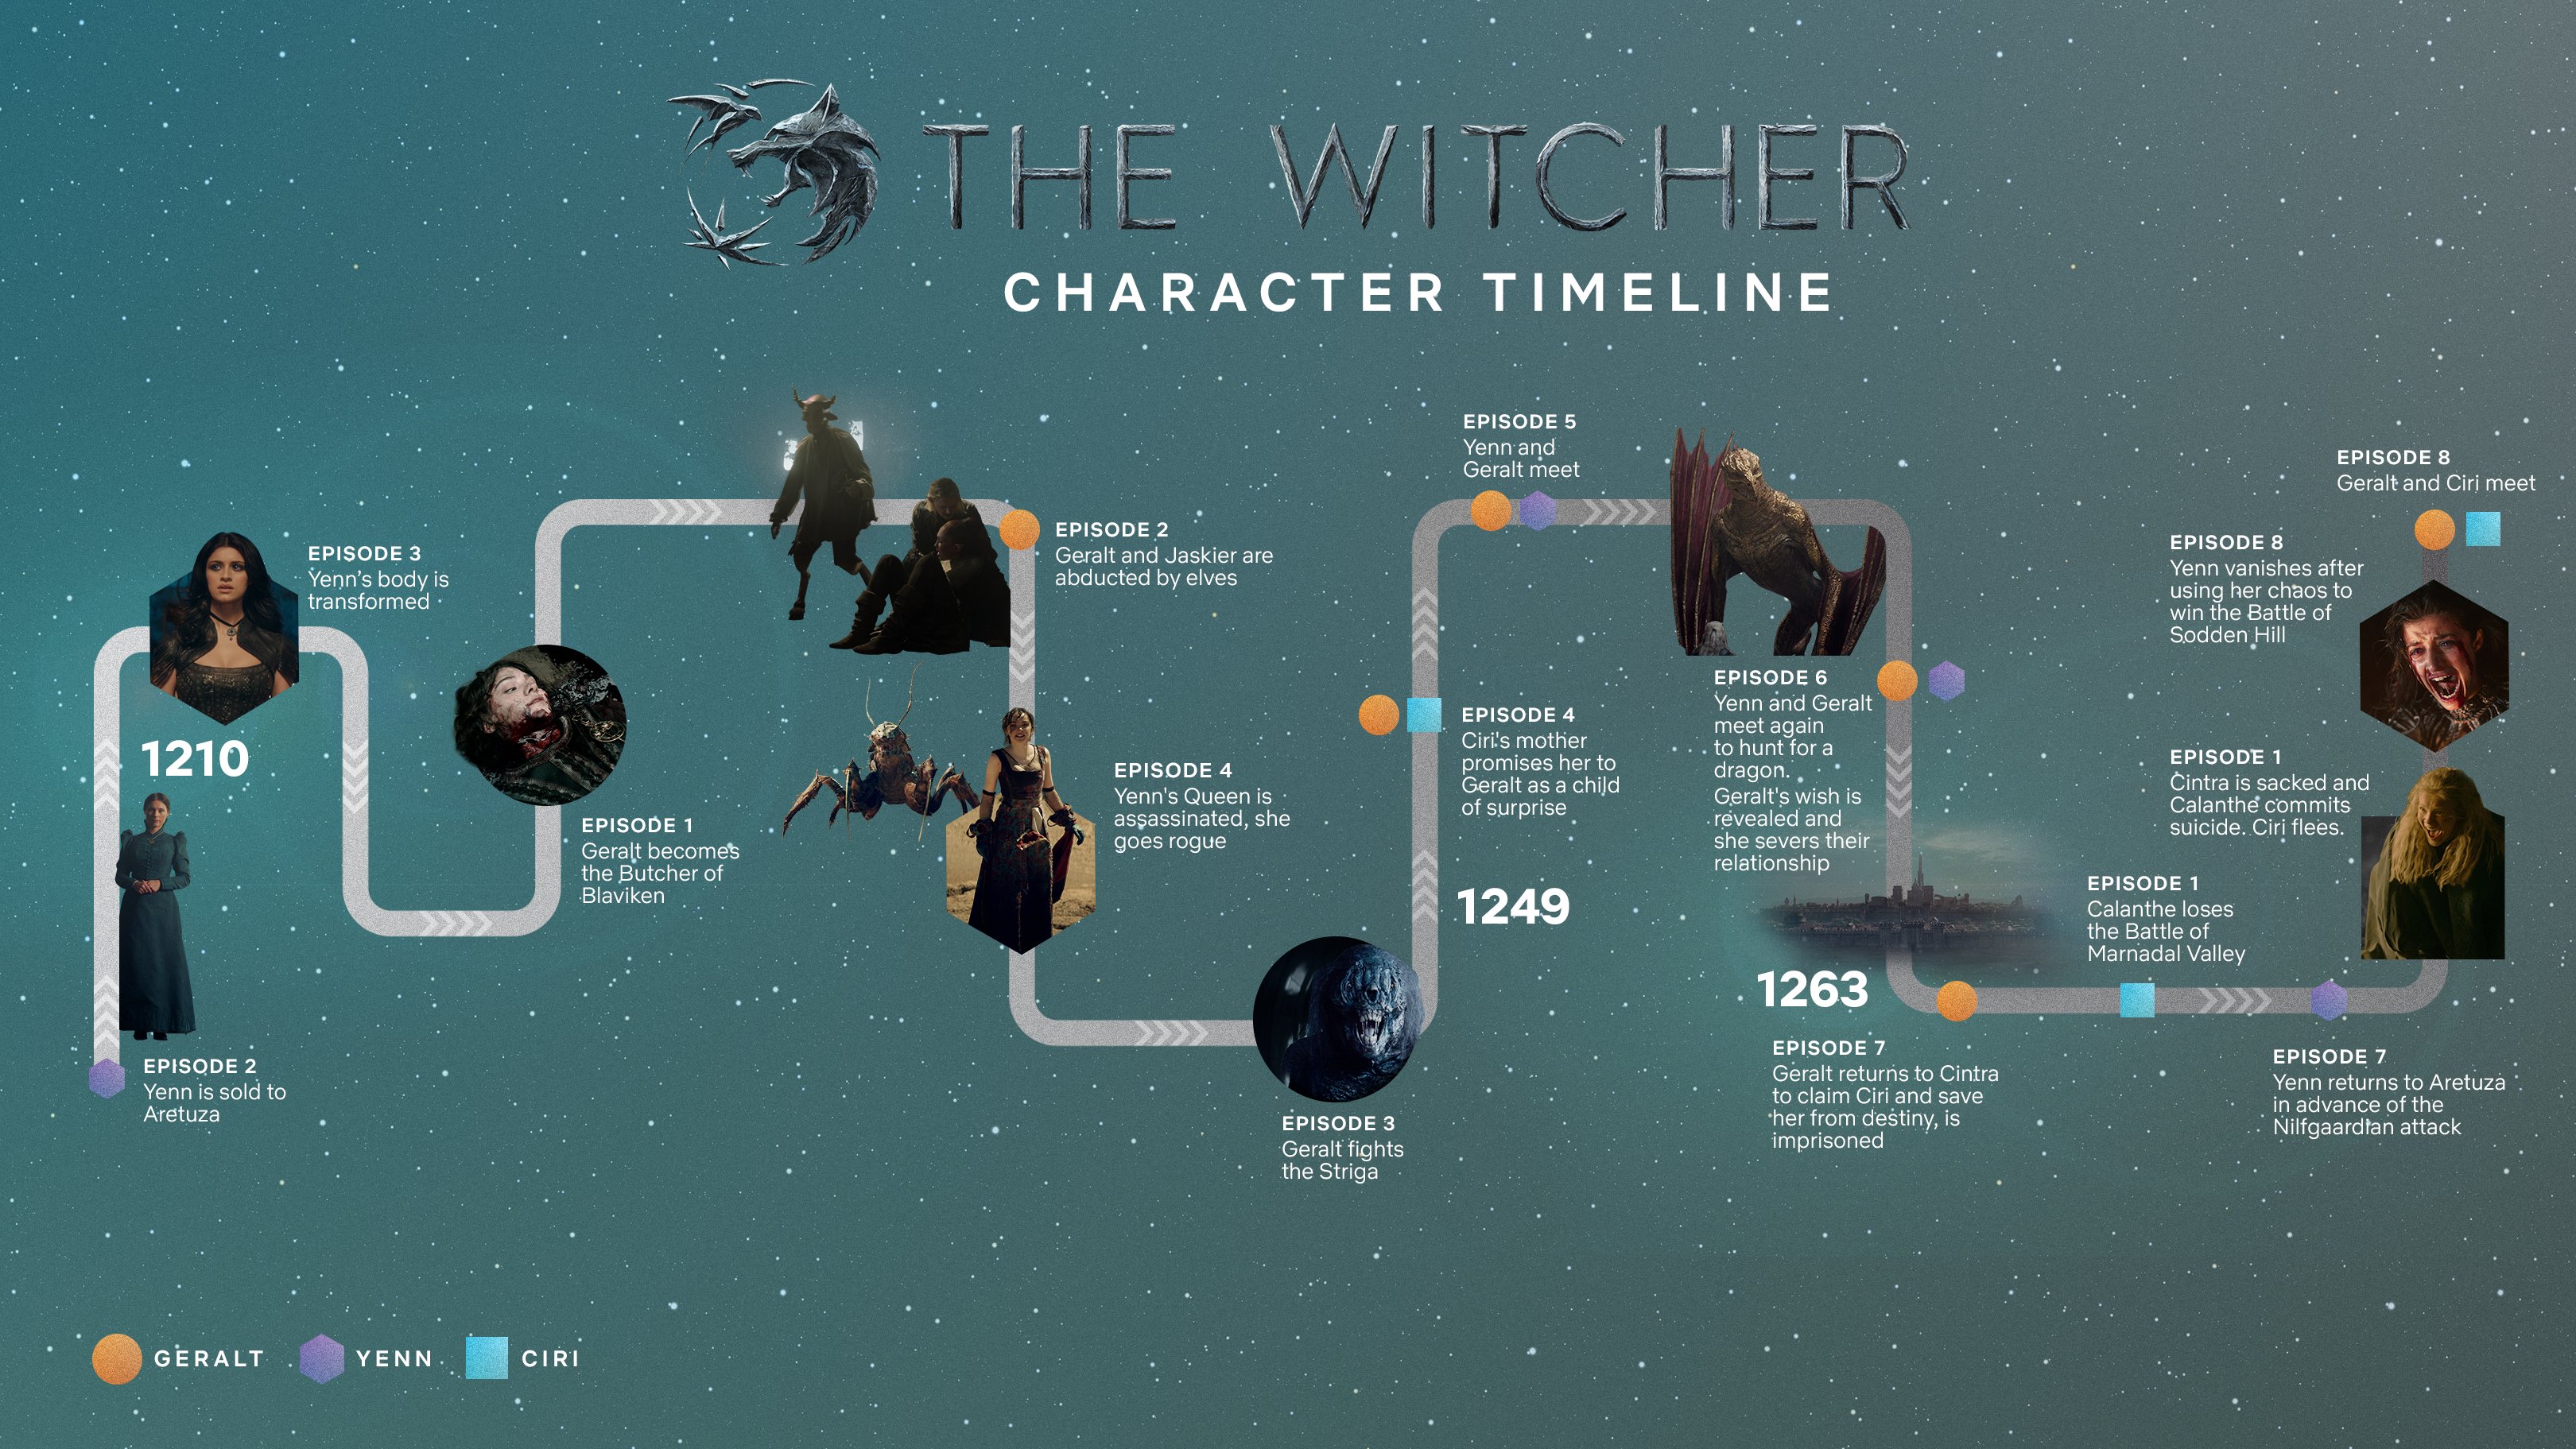 3つの時間軸を平行して描いたドラマ ウィッチャー シーズン1の分かりやすい年表が公開 地図と連動した本格的なインタラクティブ年表も Doope 国内外のゲーム情報サイト